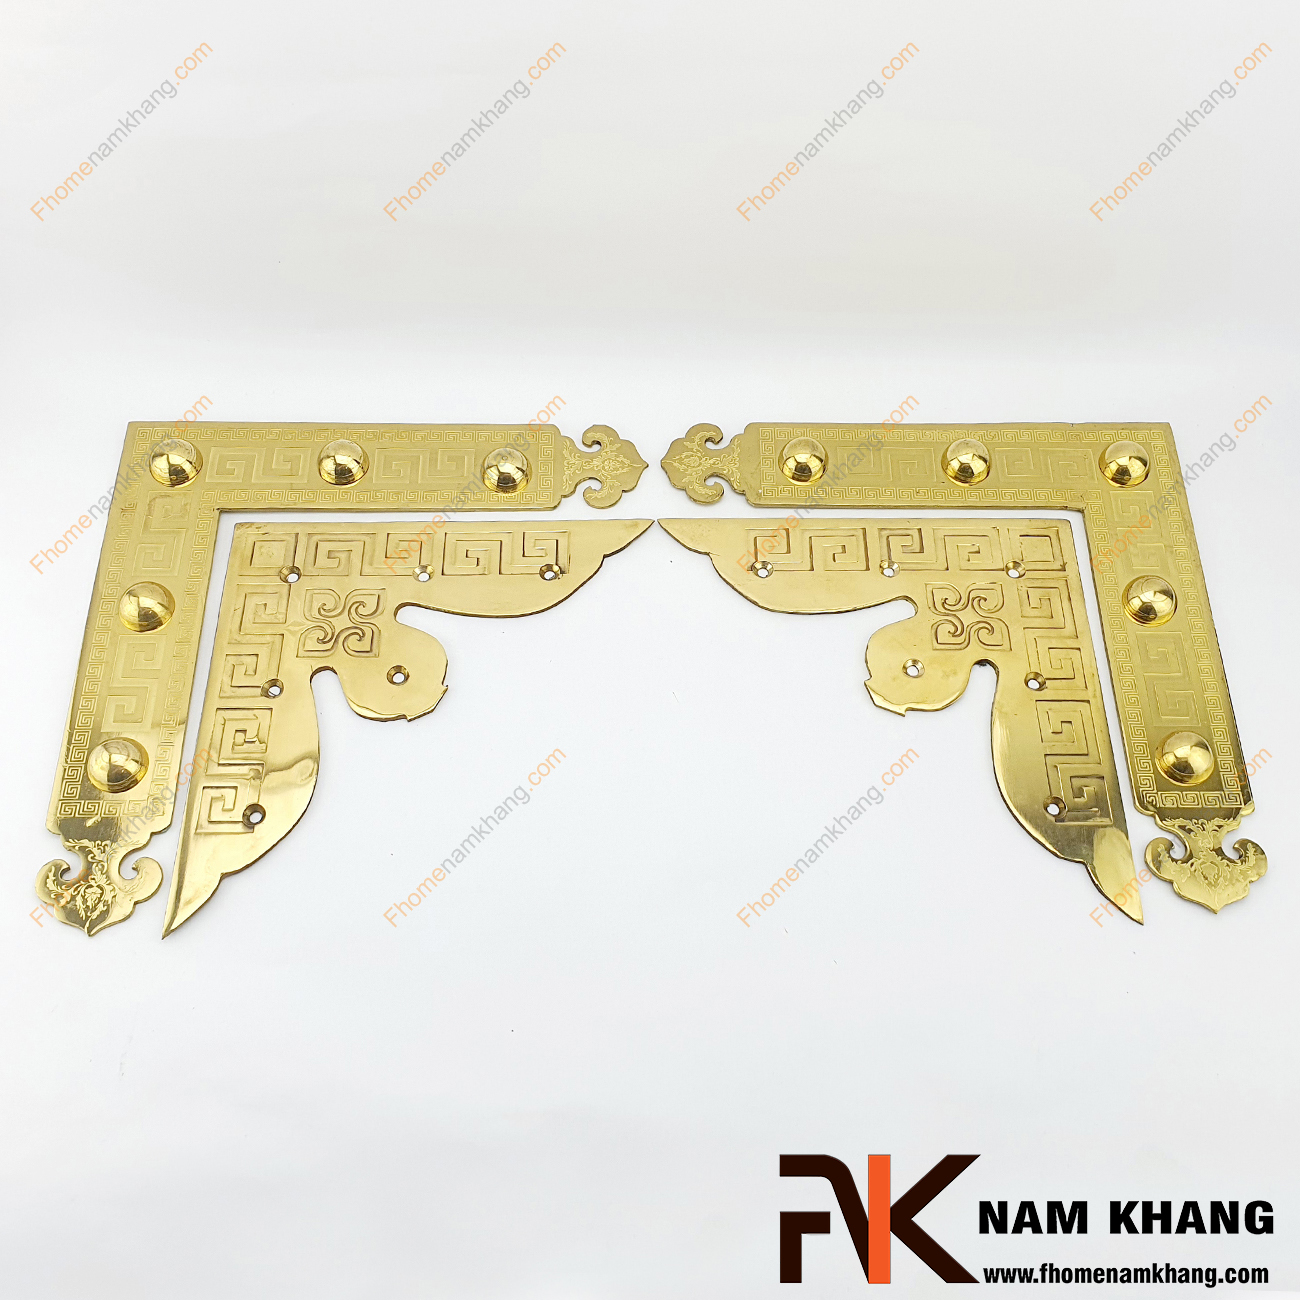 Ke góc cửa gỗ bằng đồng cao cấp NK188-25KVHV là sản phẩm chuyên sử dụng trên các cánh cửa lớn, cả dạng cửa 2 cánh và 4 cánh.